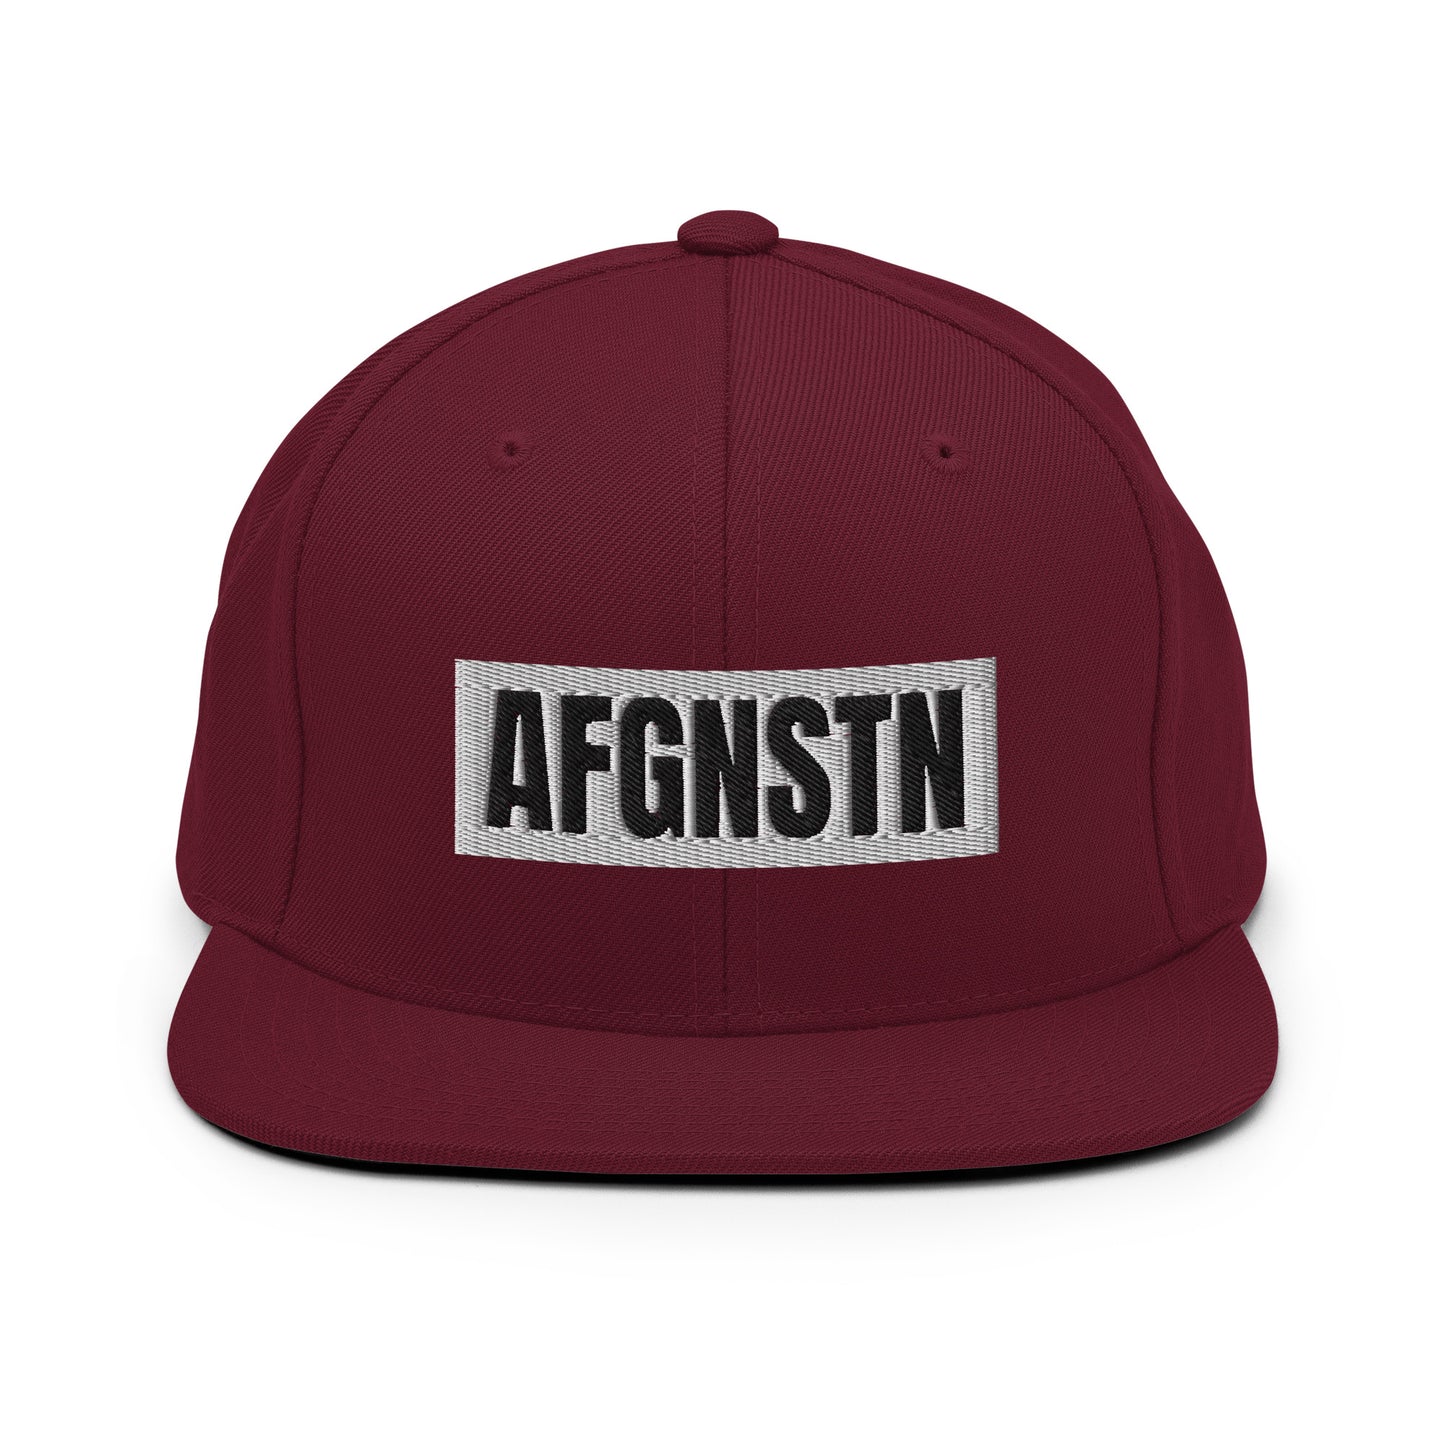 AFGNSTN Snapback Hat